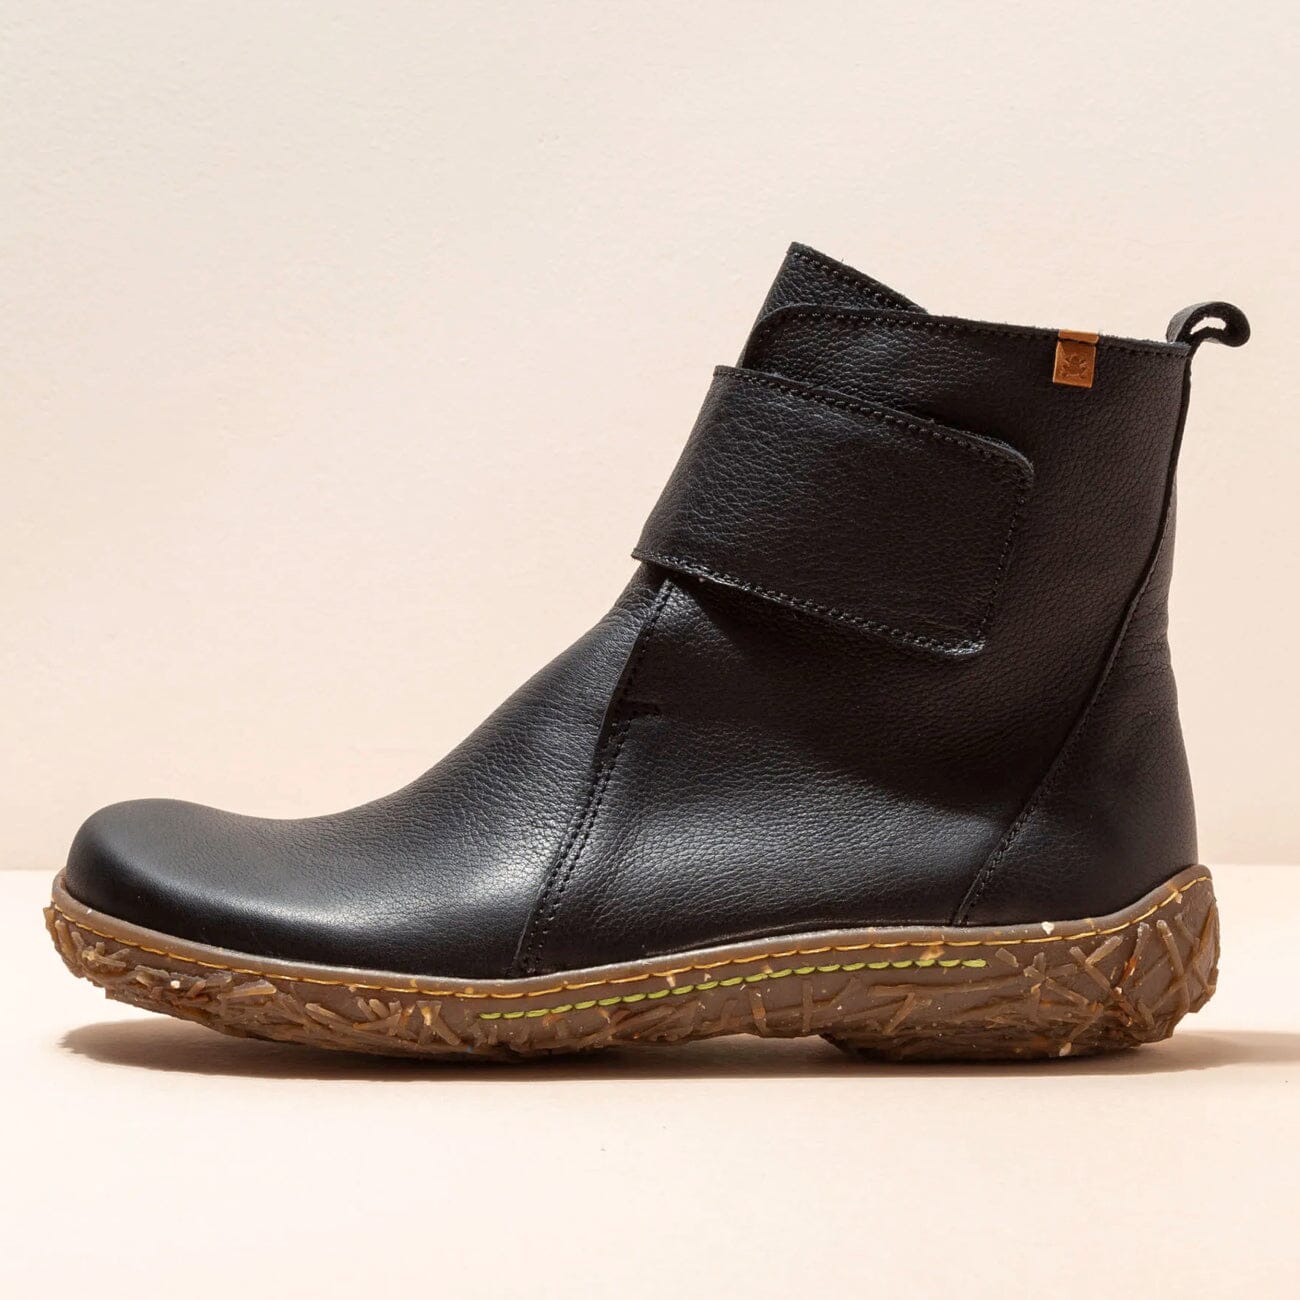 El Naturalista, NIDO ELLA, Boot, Natural Grain Leather, Black Boots El Natura Lista Black 37 